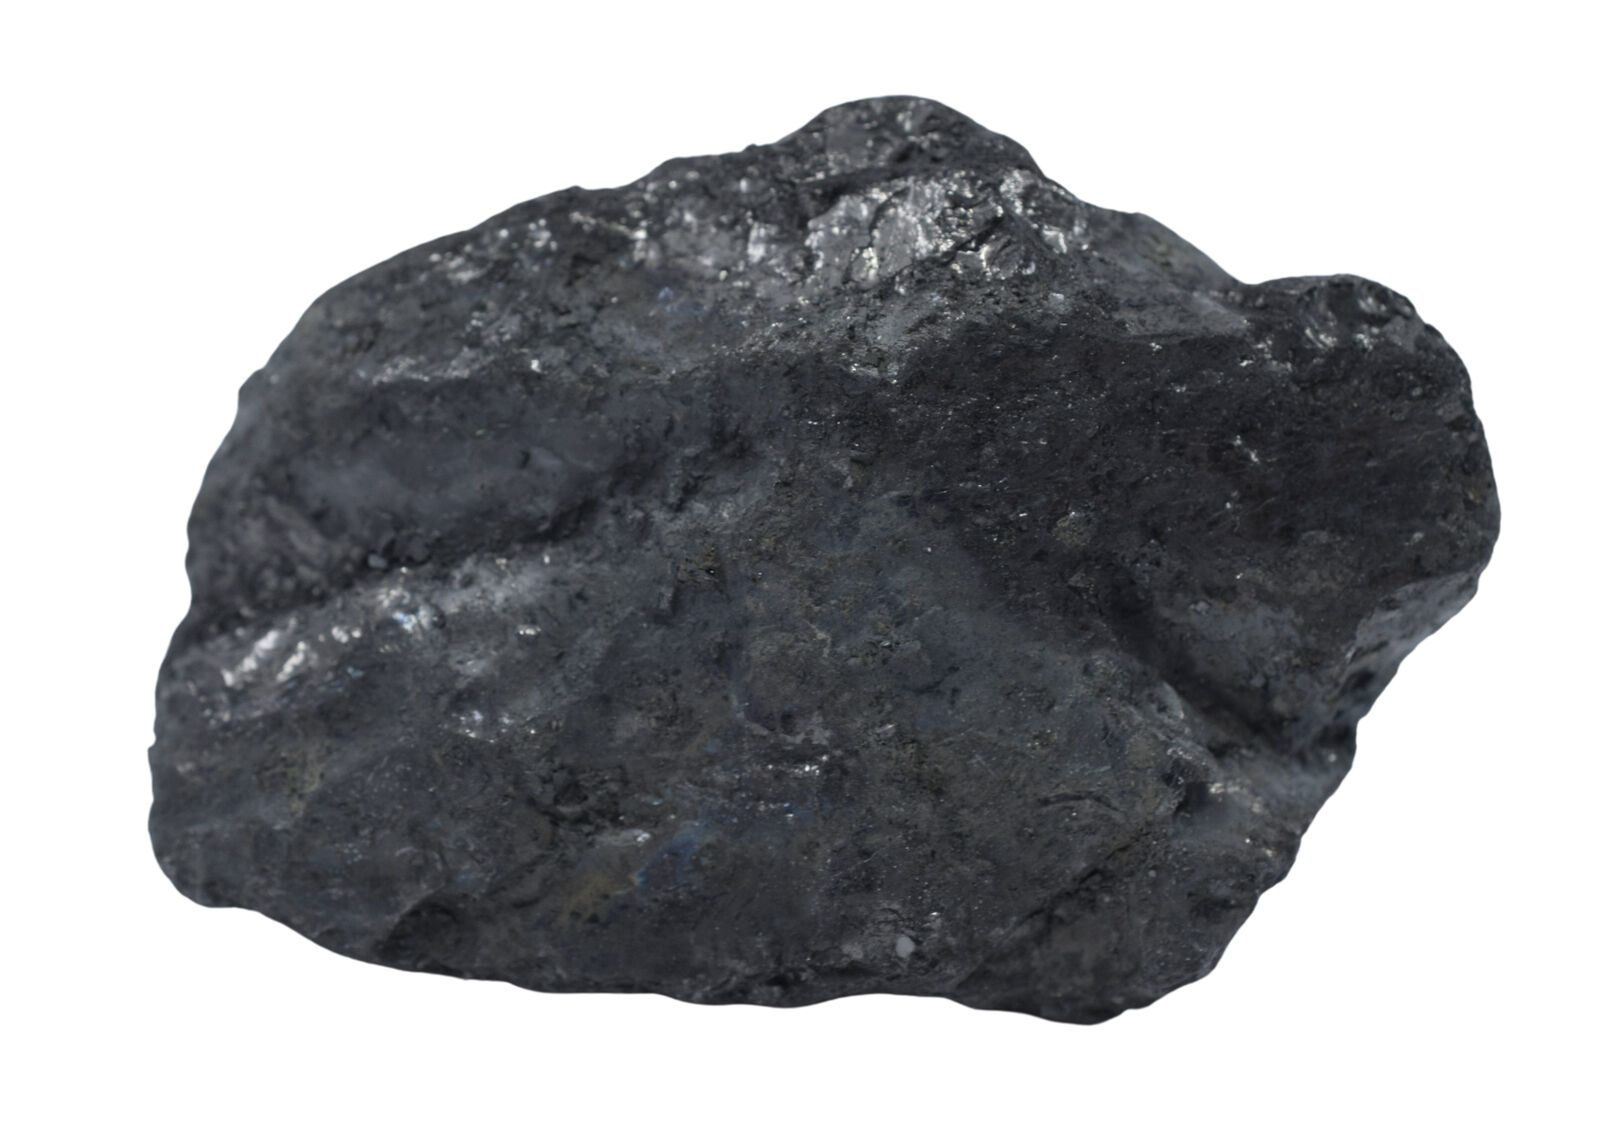 Raw Anthracite Coal Metamorphic Rock, 3